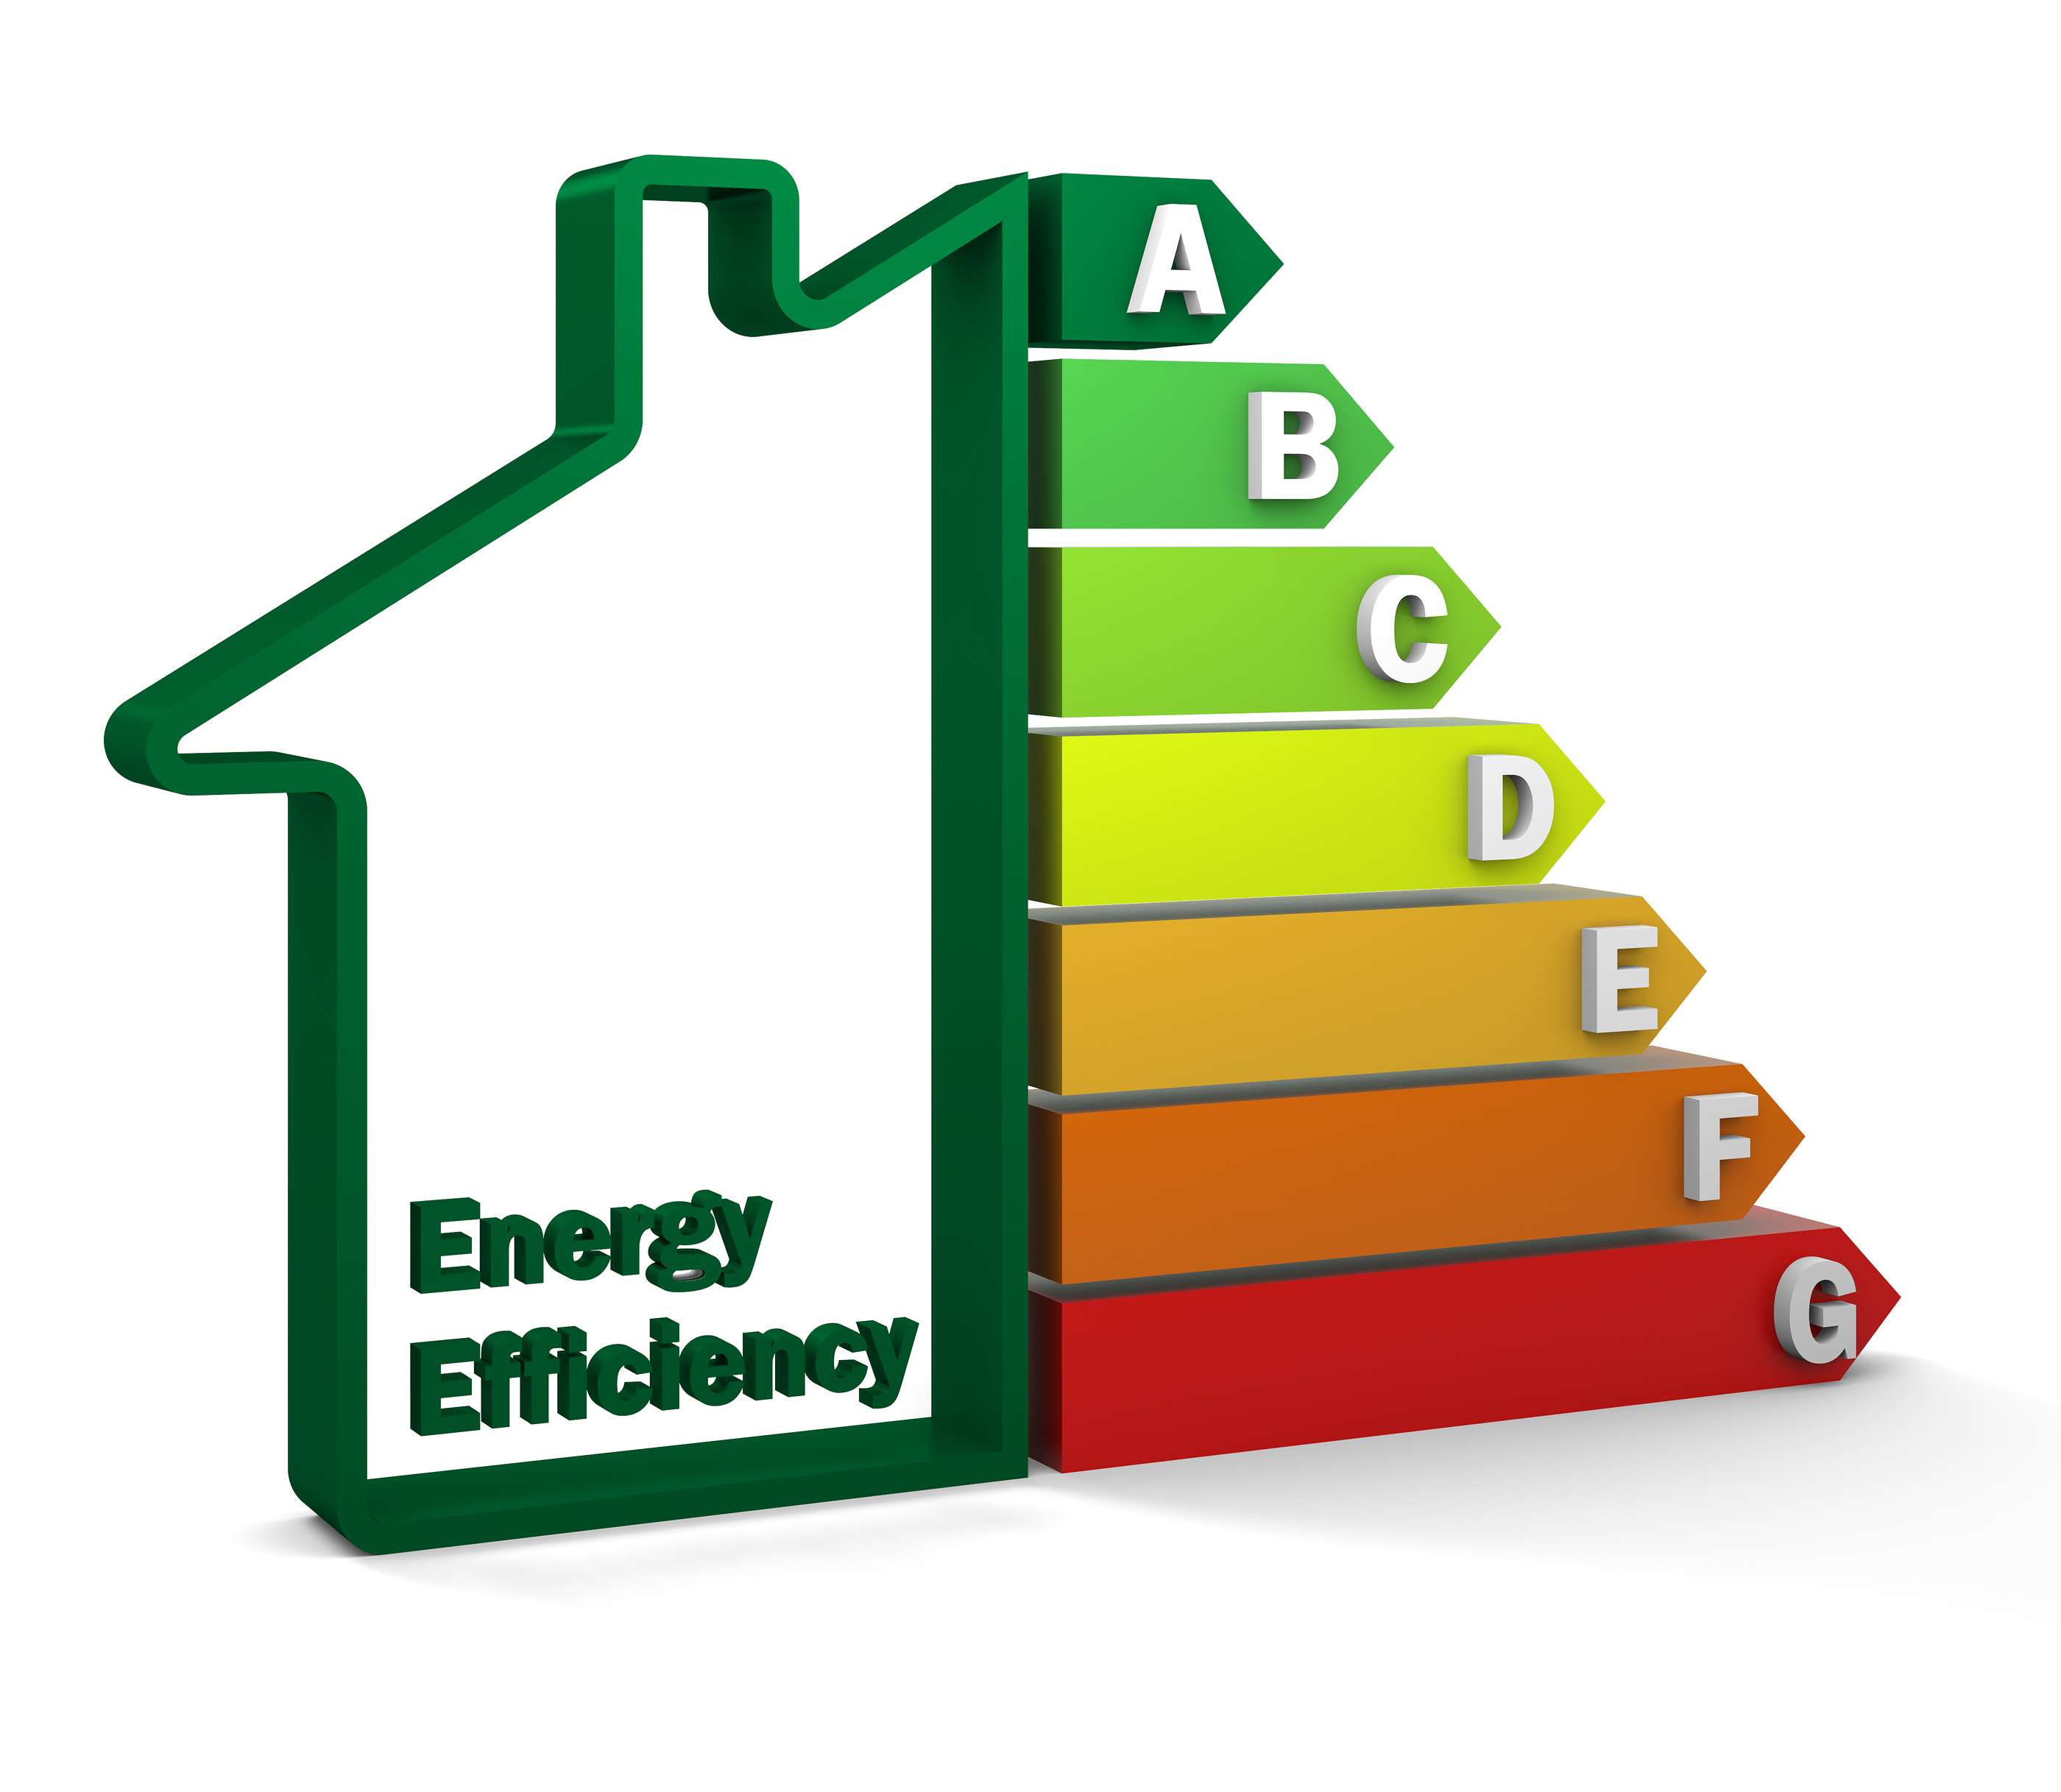 improve poor energy efficiency ratings